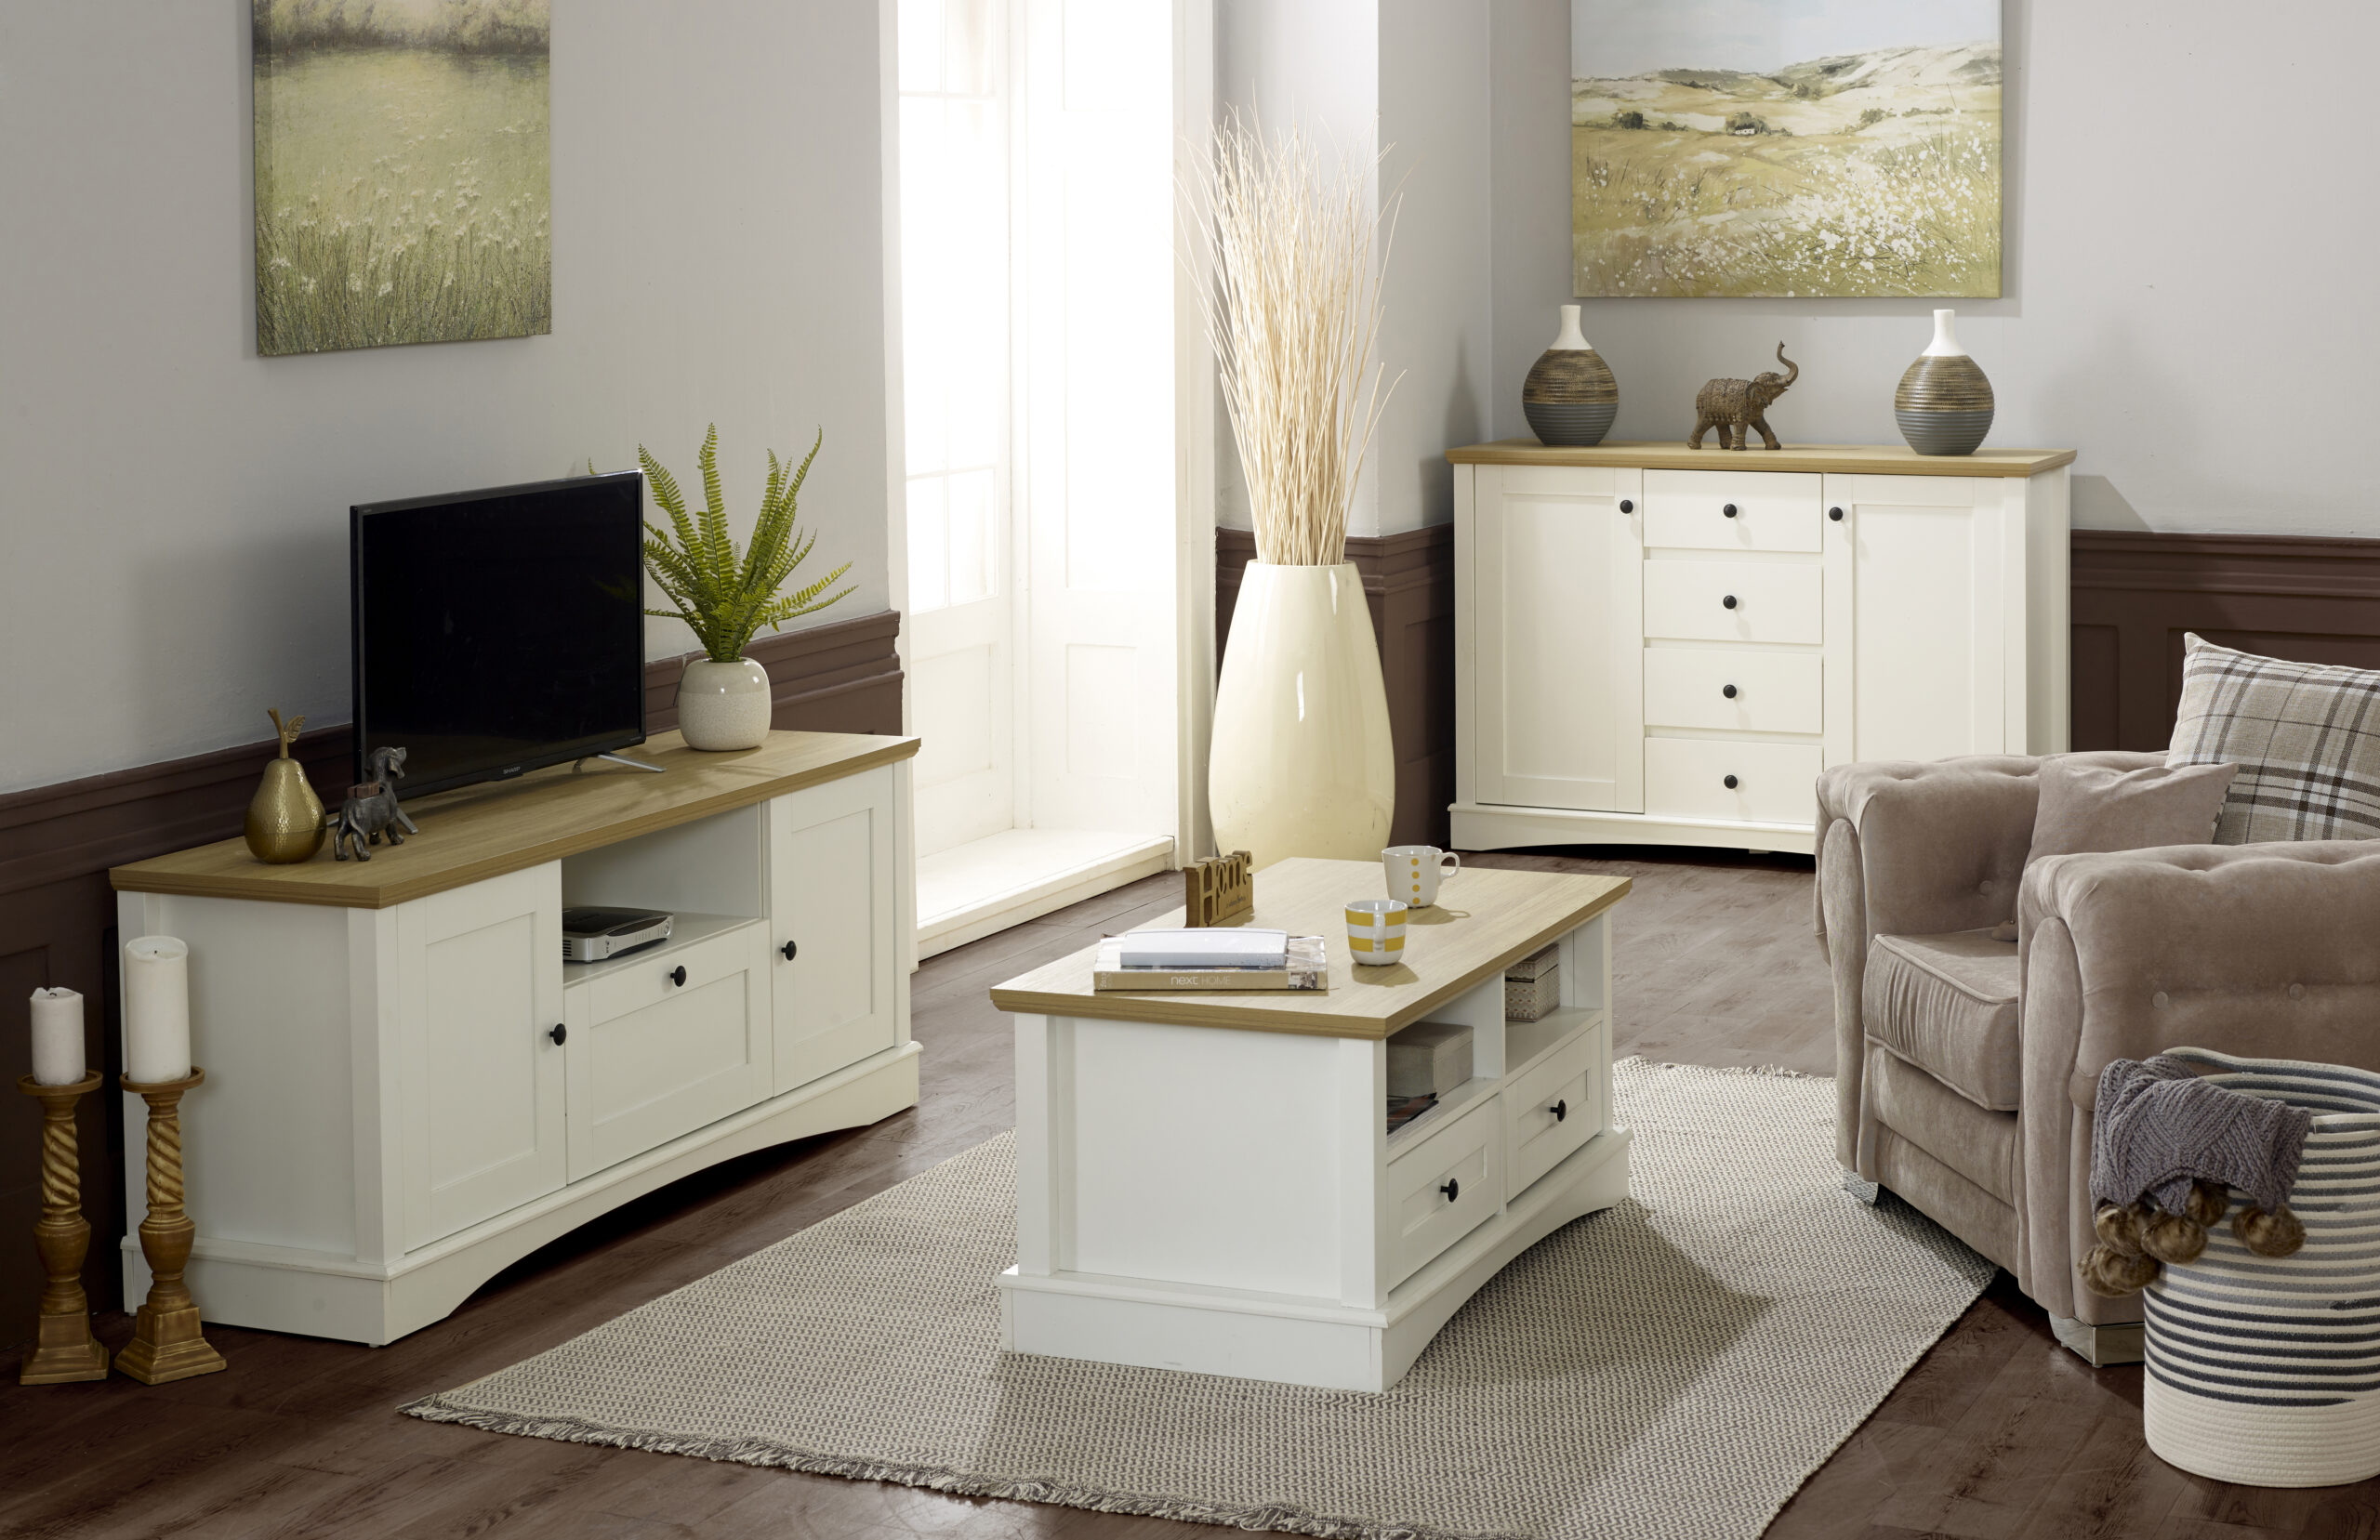 Furniture wholesaler eyes up UK growth - Big Furniture Group